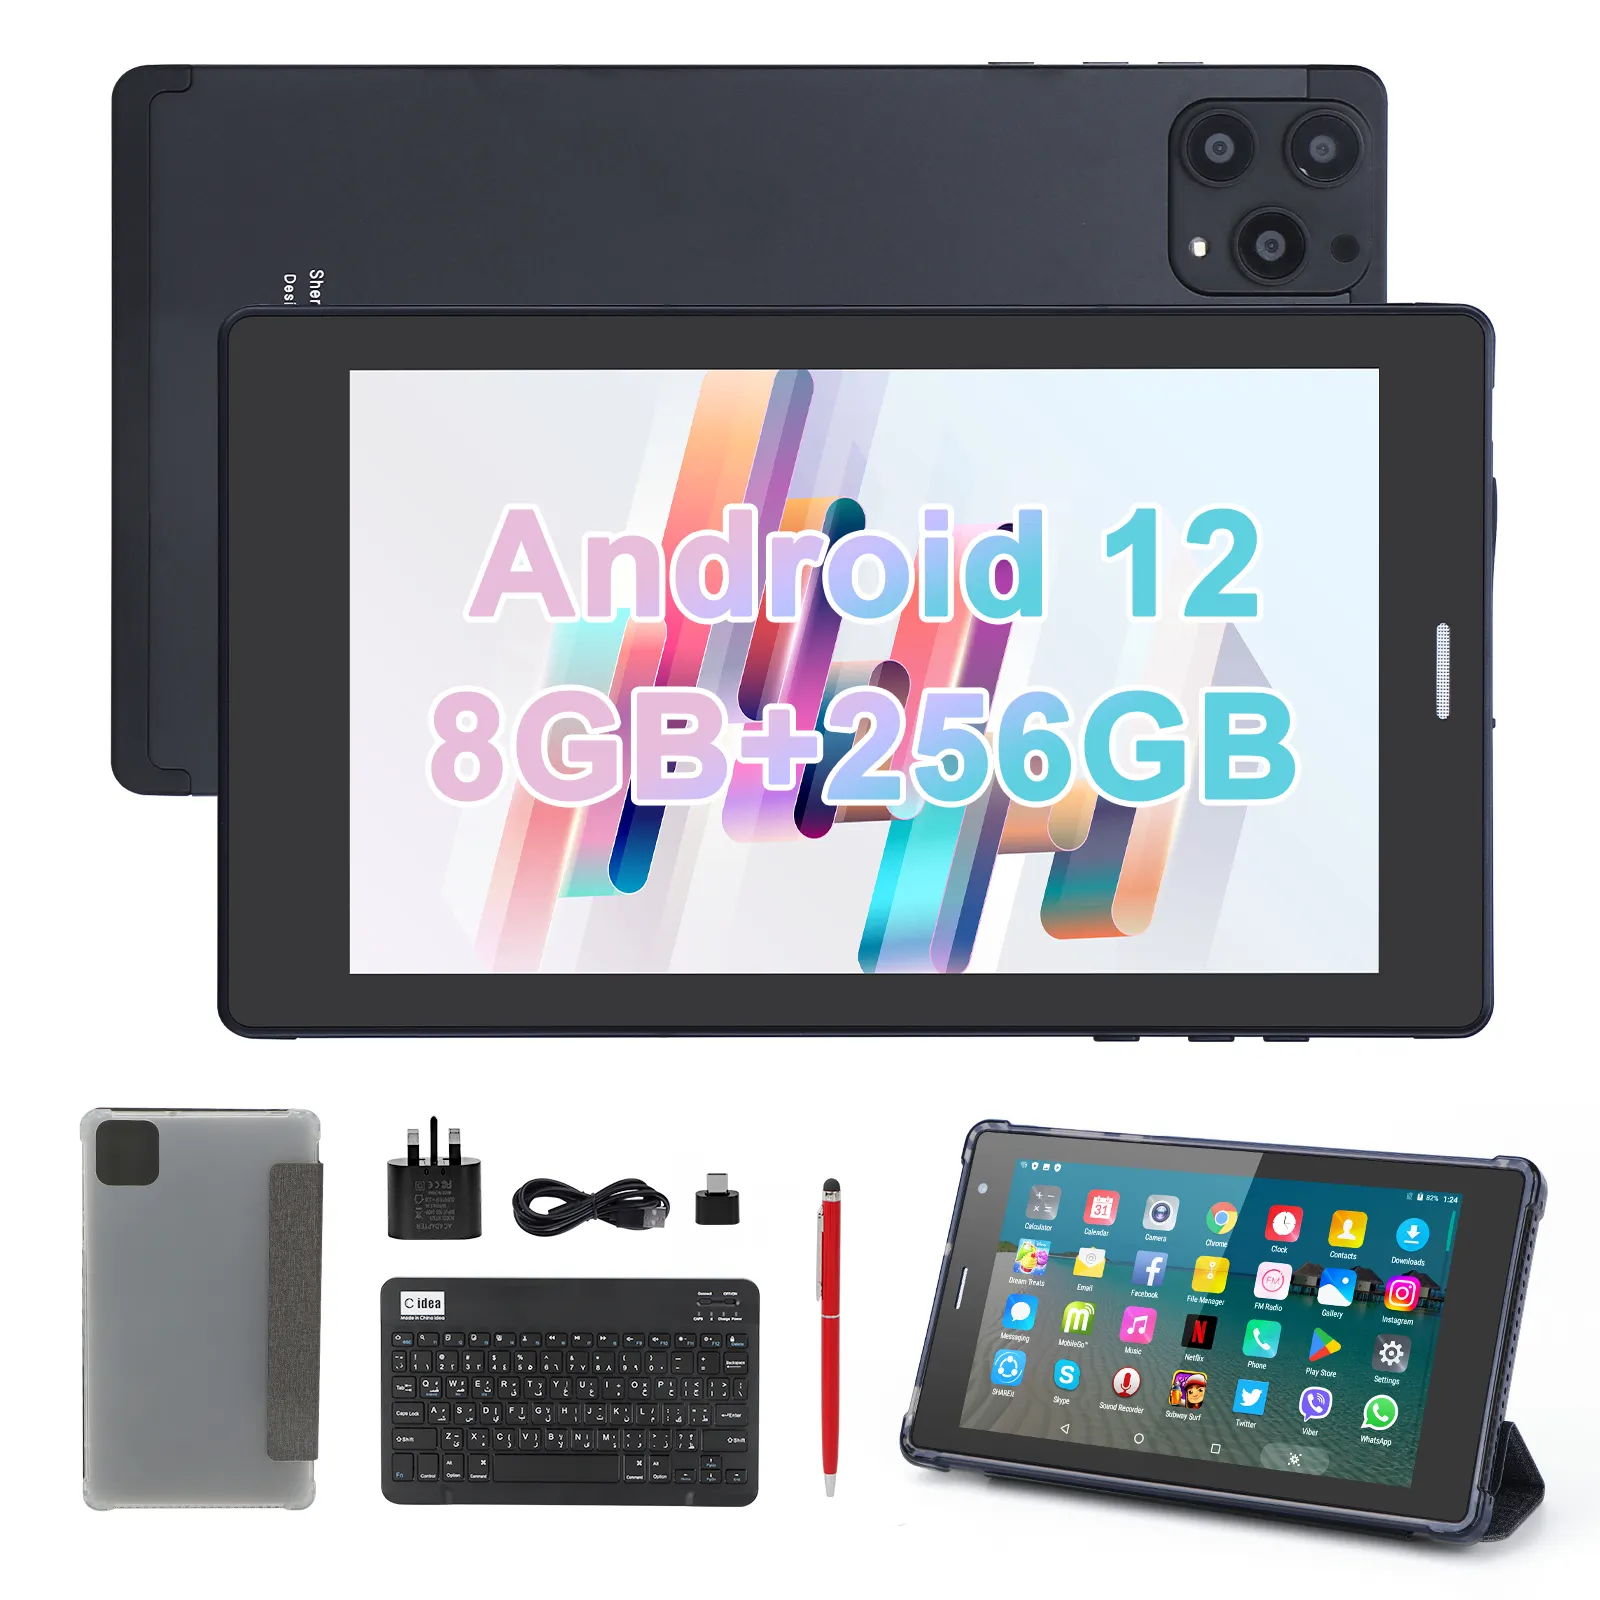 C idea Fabricant Tablette 7 pouces Android 12 Quad Core 8 Go + 512 Go WIFI Tablette éducative pour Homme avec SIM (noir)